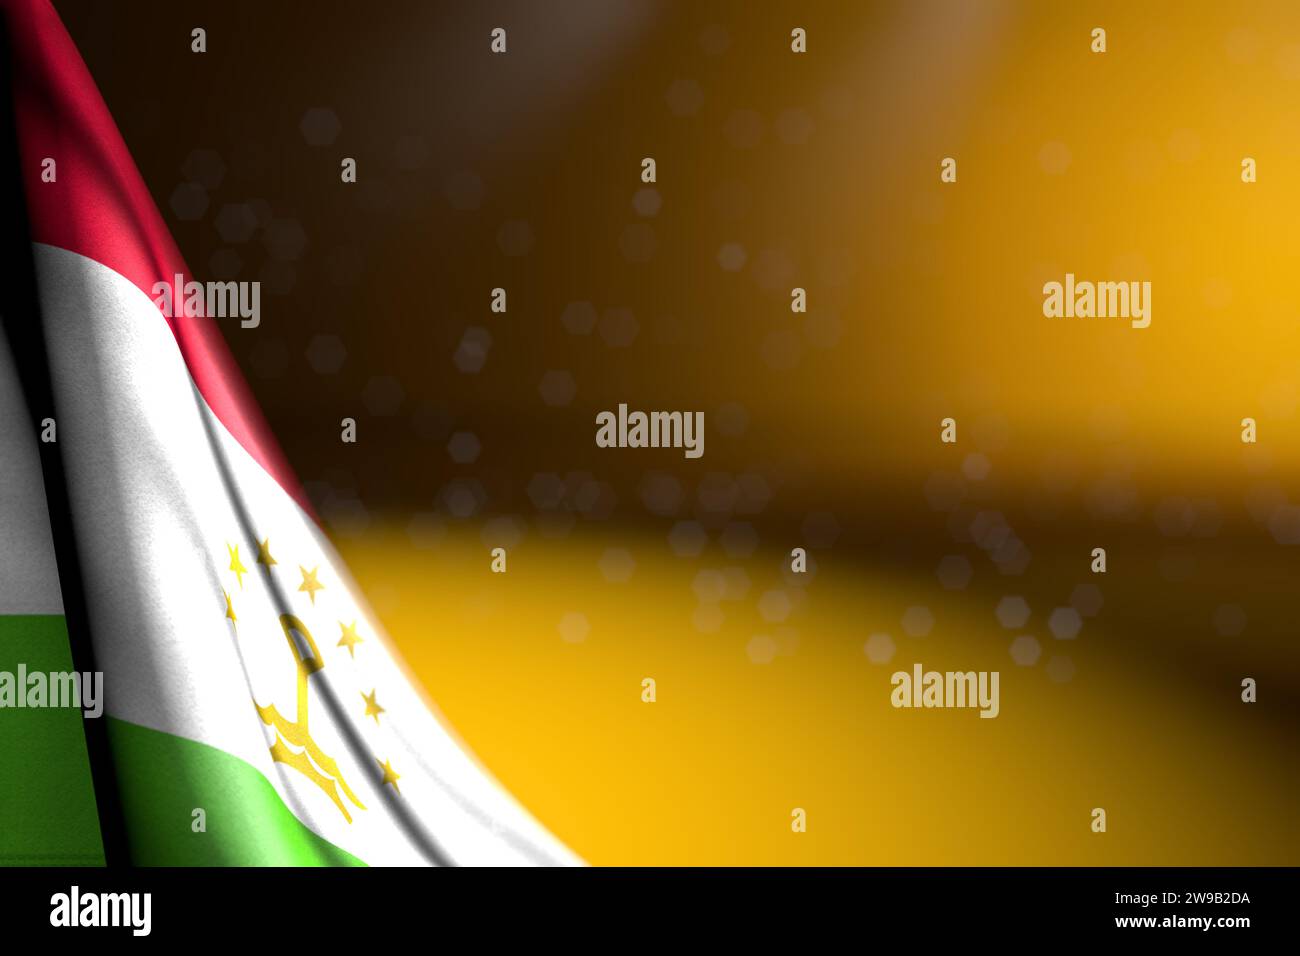 Illustrazione 3d della bandiera del Tagikistan - immagine della bandiera del Tagikistan appesa diagonalmente sul giallo con messa a fuoco selettiva e spazio vuoto per il testo Foto Stock